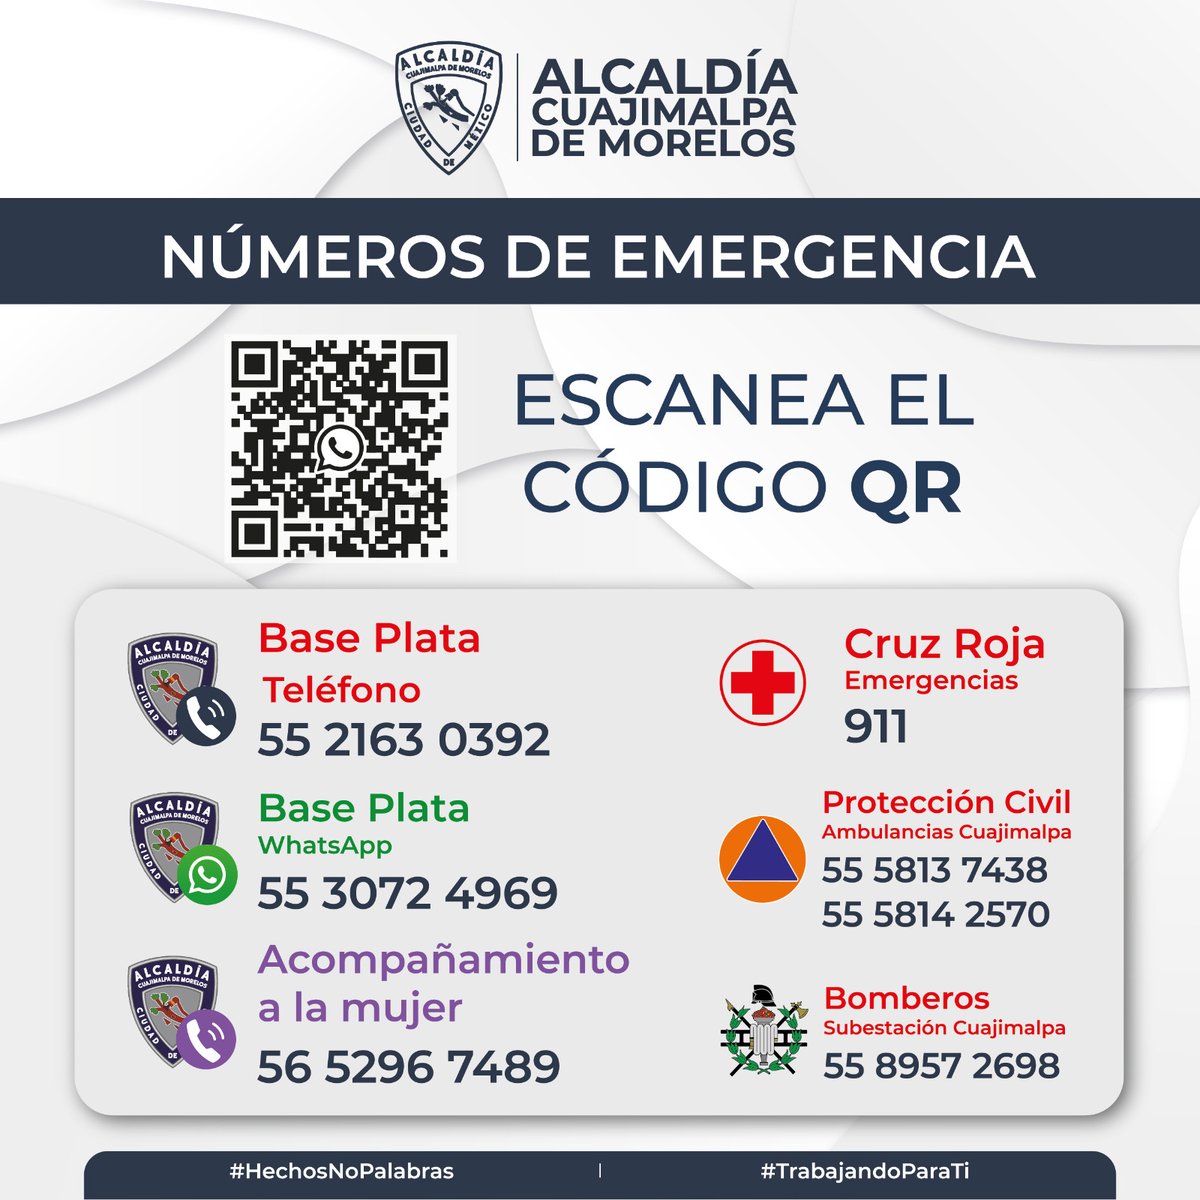 Alcaldía #Cuajimalpa Te compartimos los teléfonos de Emergencia en Alcaldía #Cuajimalpa, en los cuales puedes solicitar todo tipo de apoyo y atención urgente. También puedes marcar al 911 y @locatel_mx *0311 #SiempreContigo @AdrianRubalcava